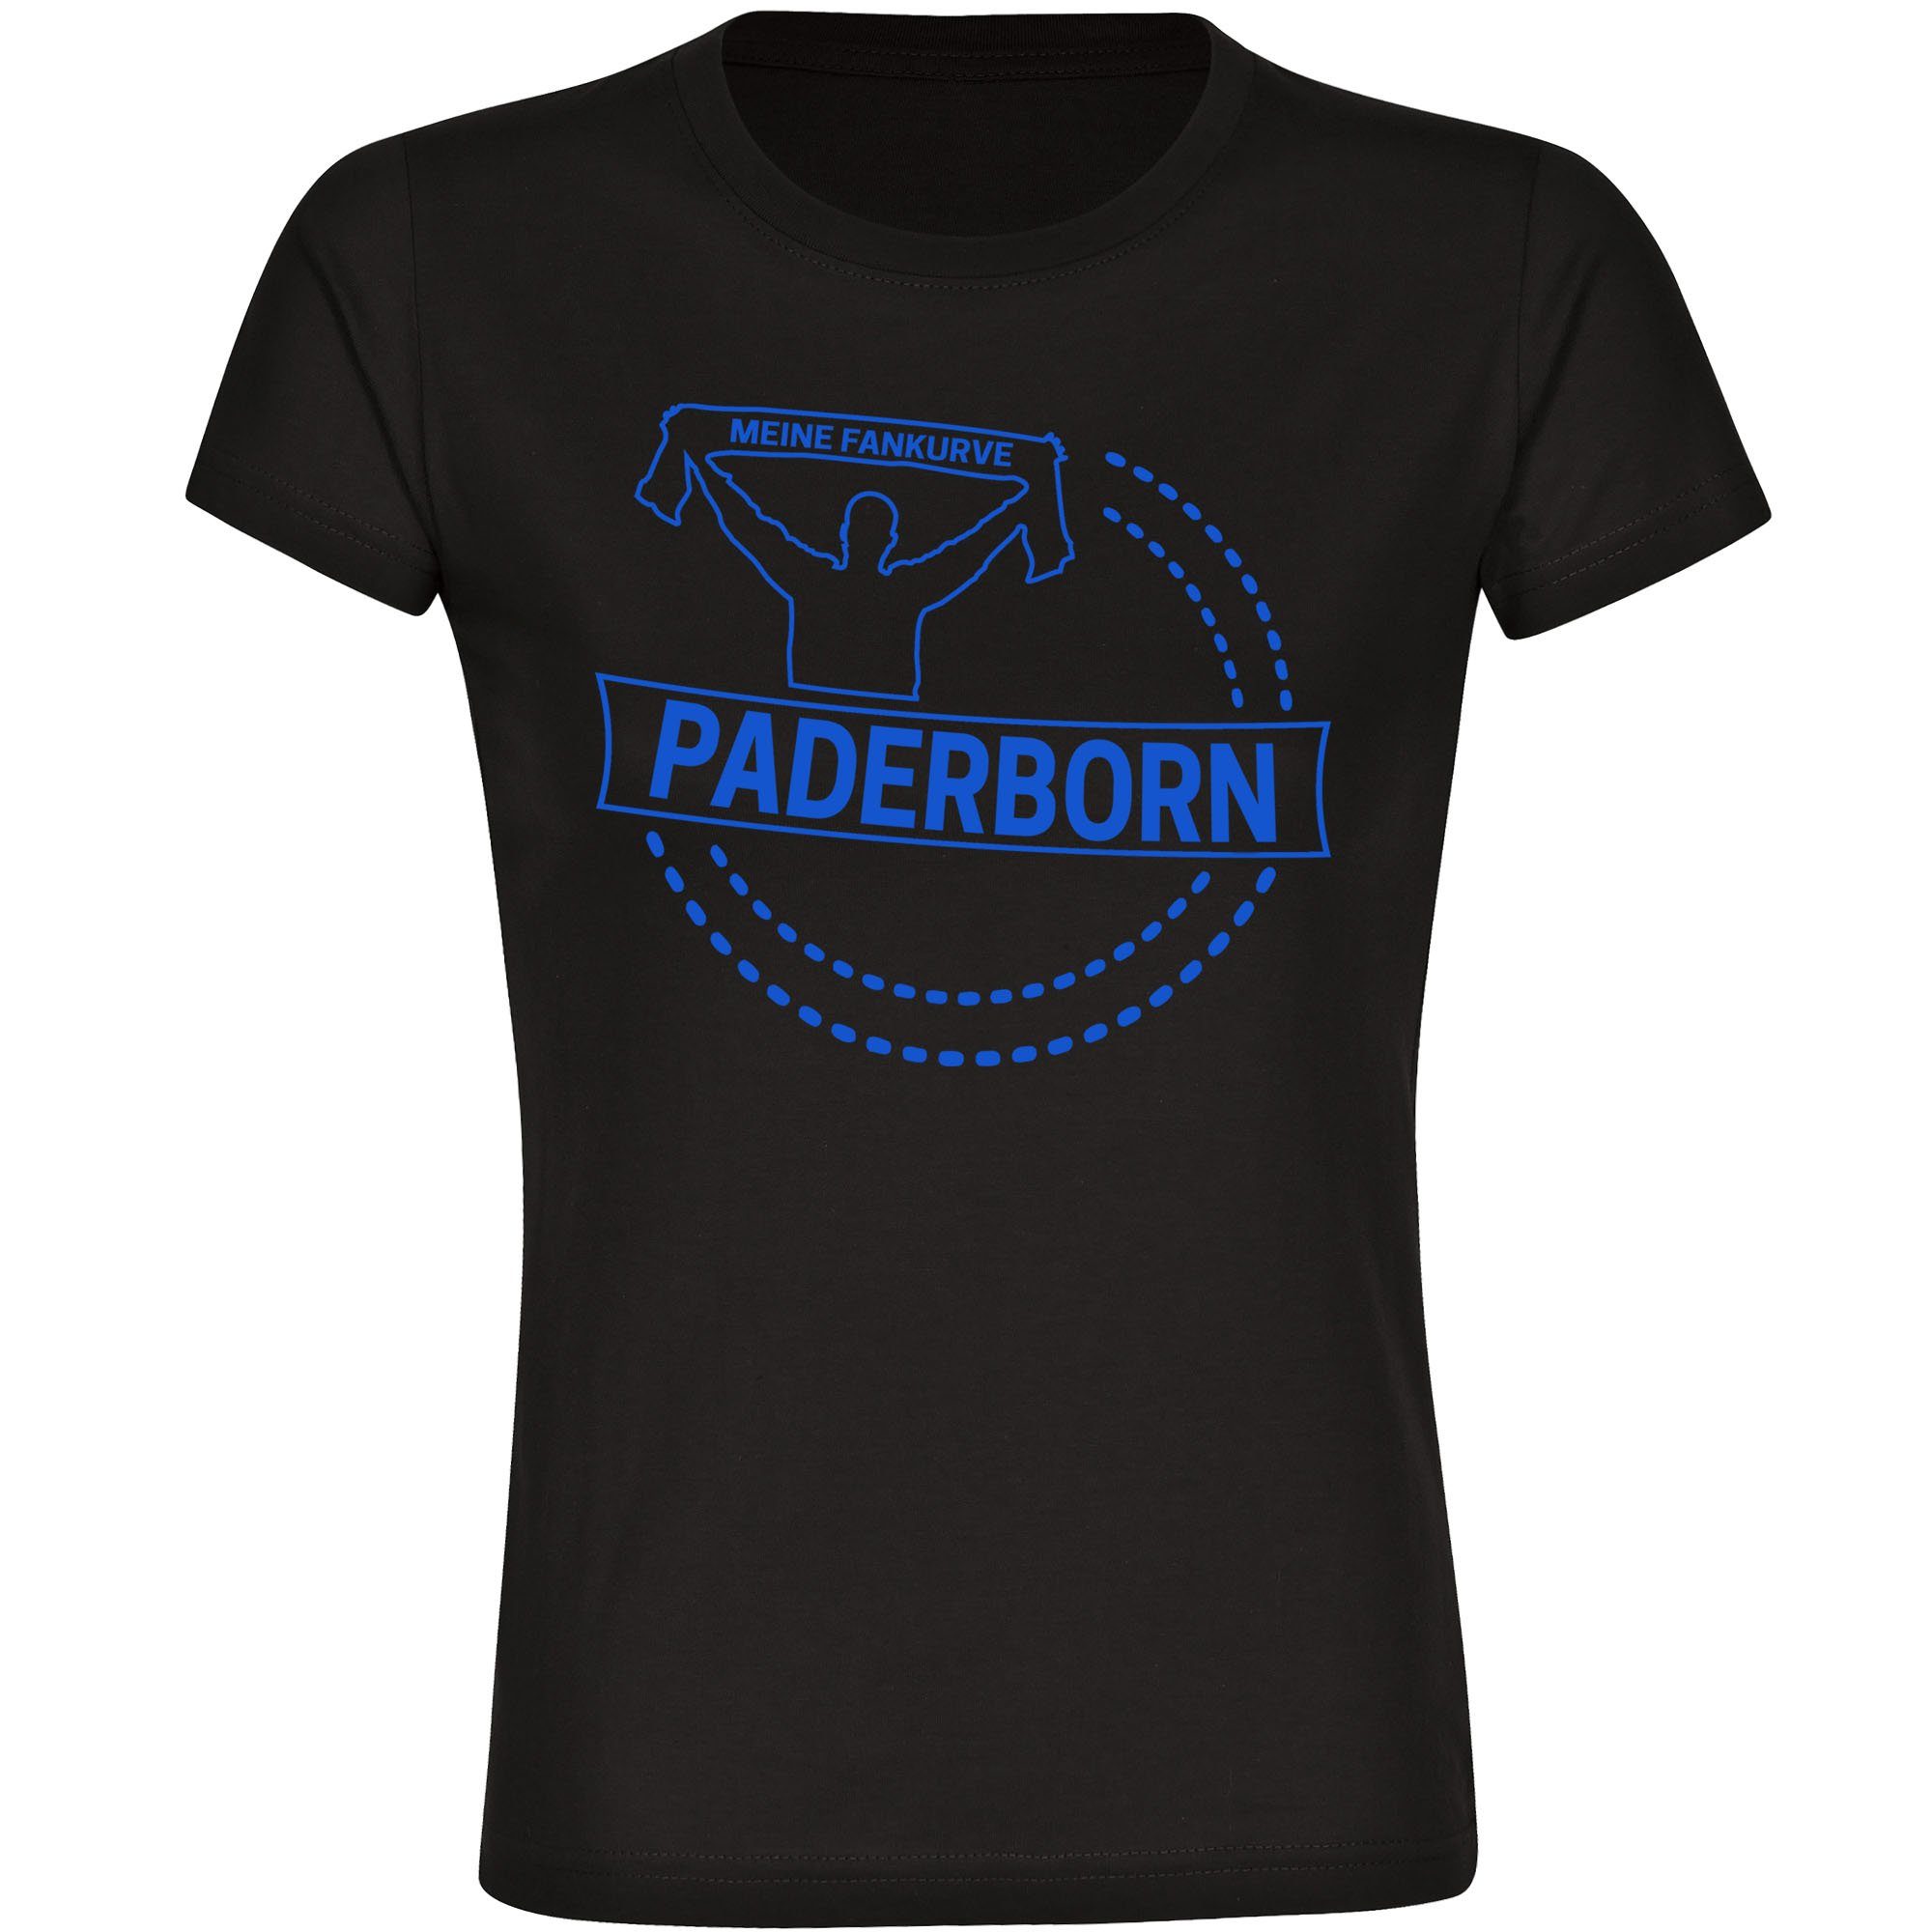 multifanshop T-Shirt Damen Paderborn - Meine Fankurve - Frauen